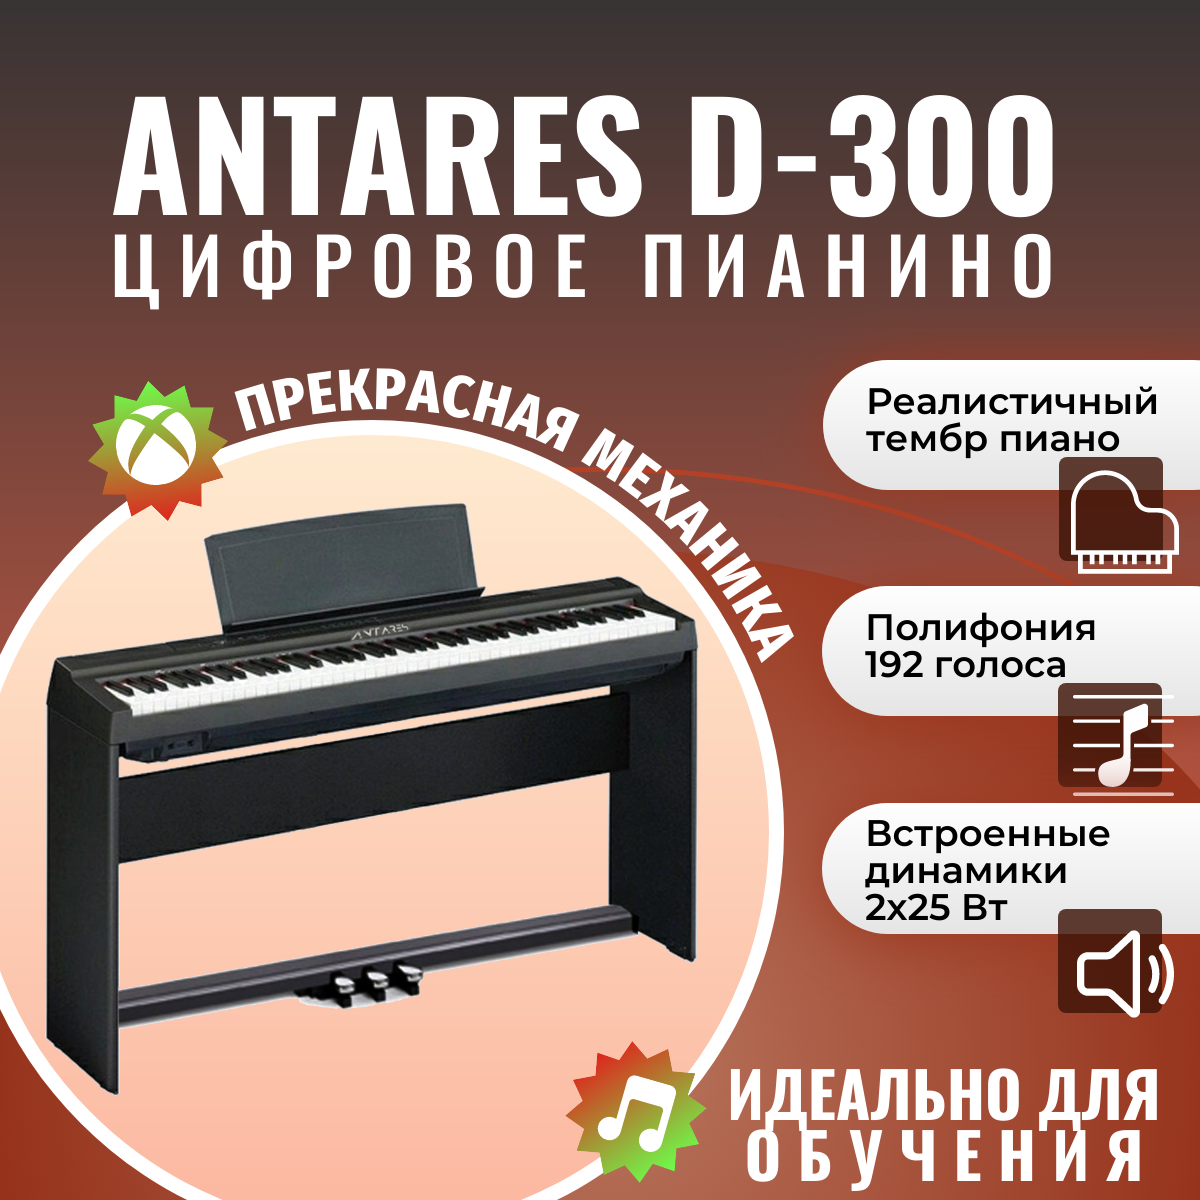 Antares D-300